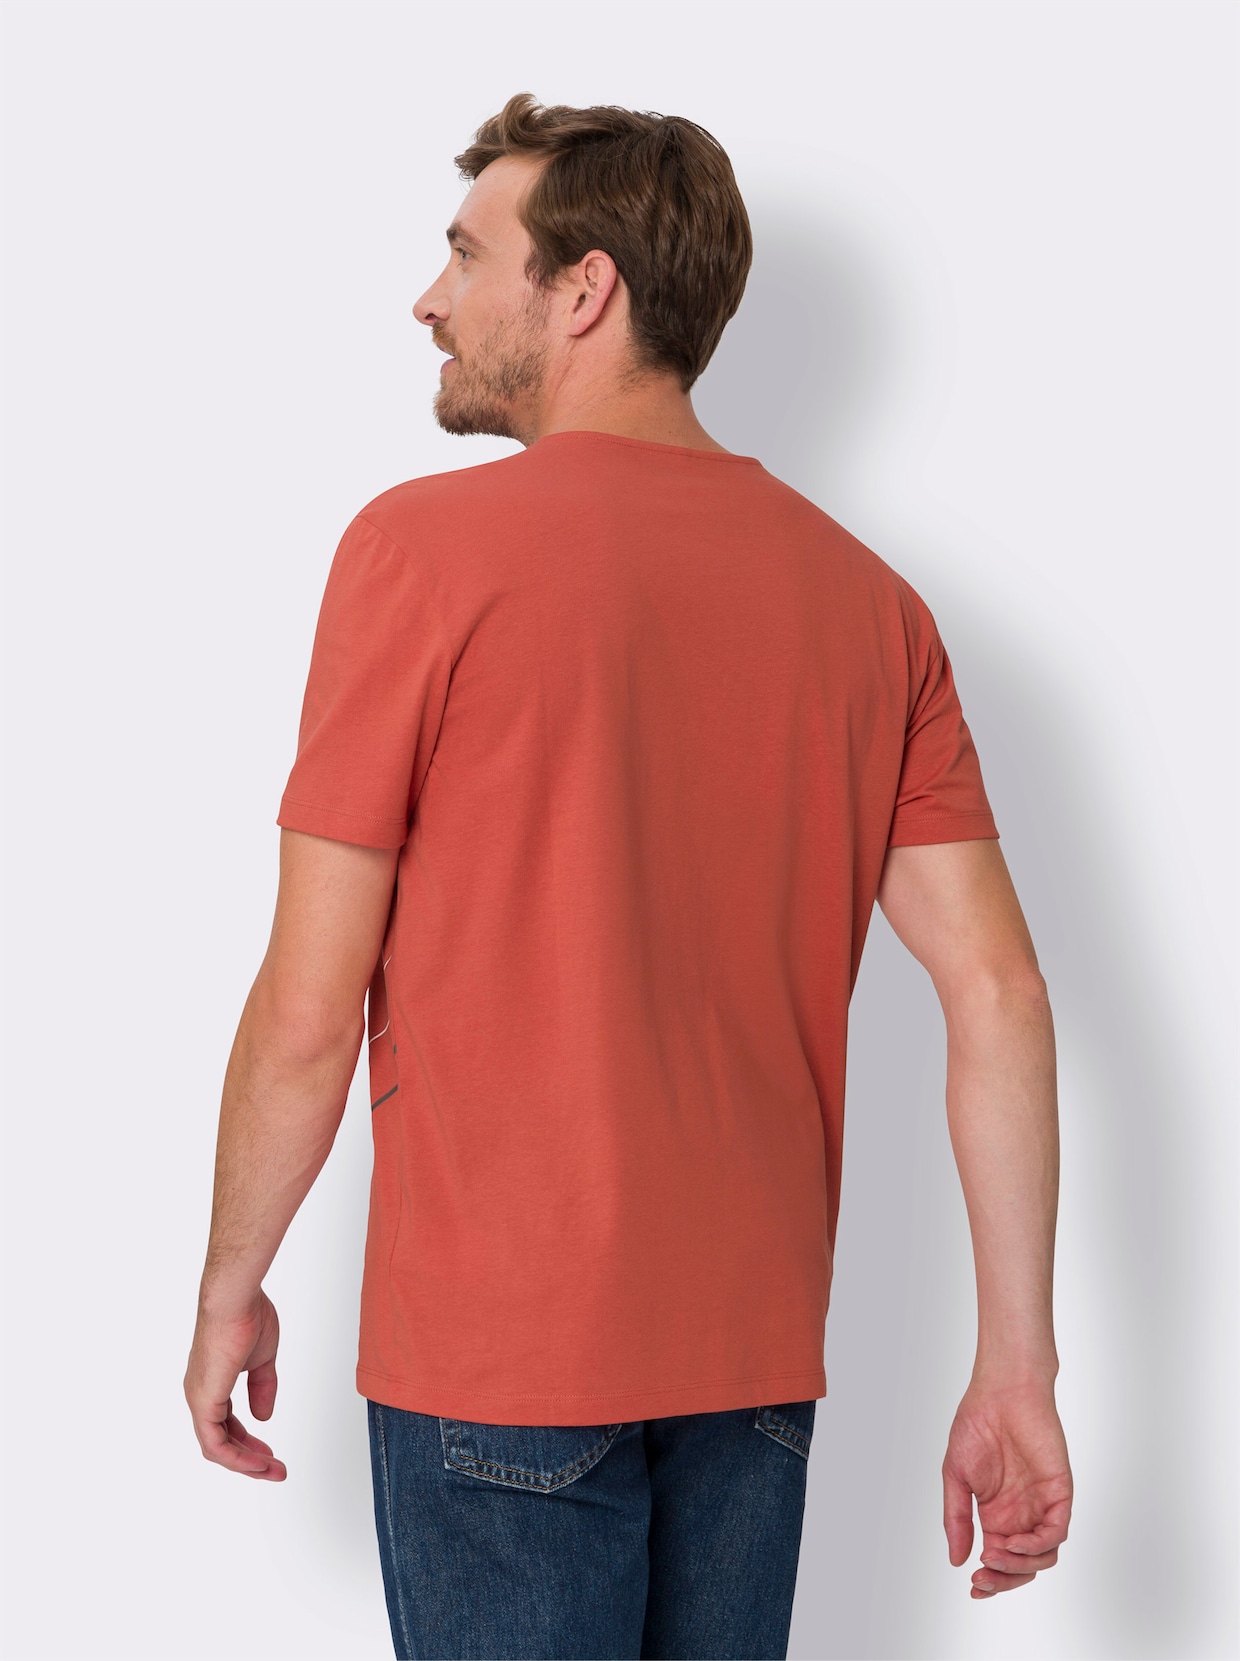 Voľnočasové tričko - hrdzavočervená